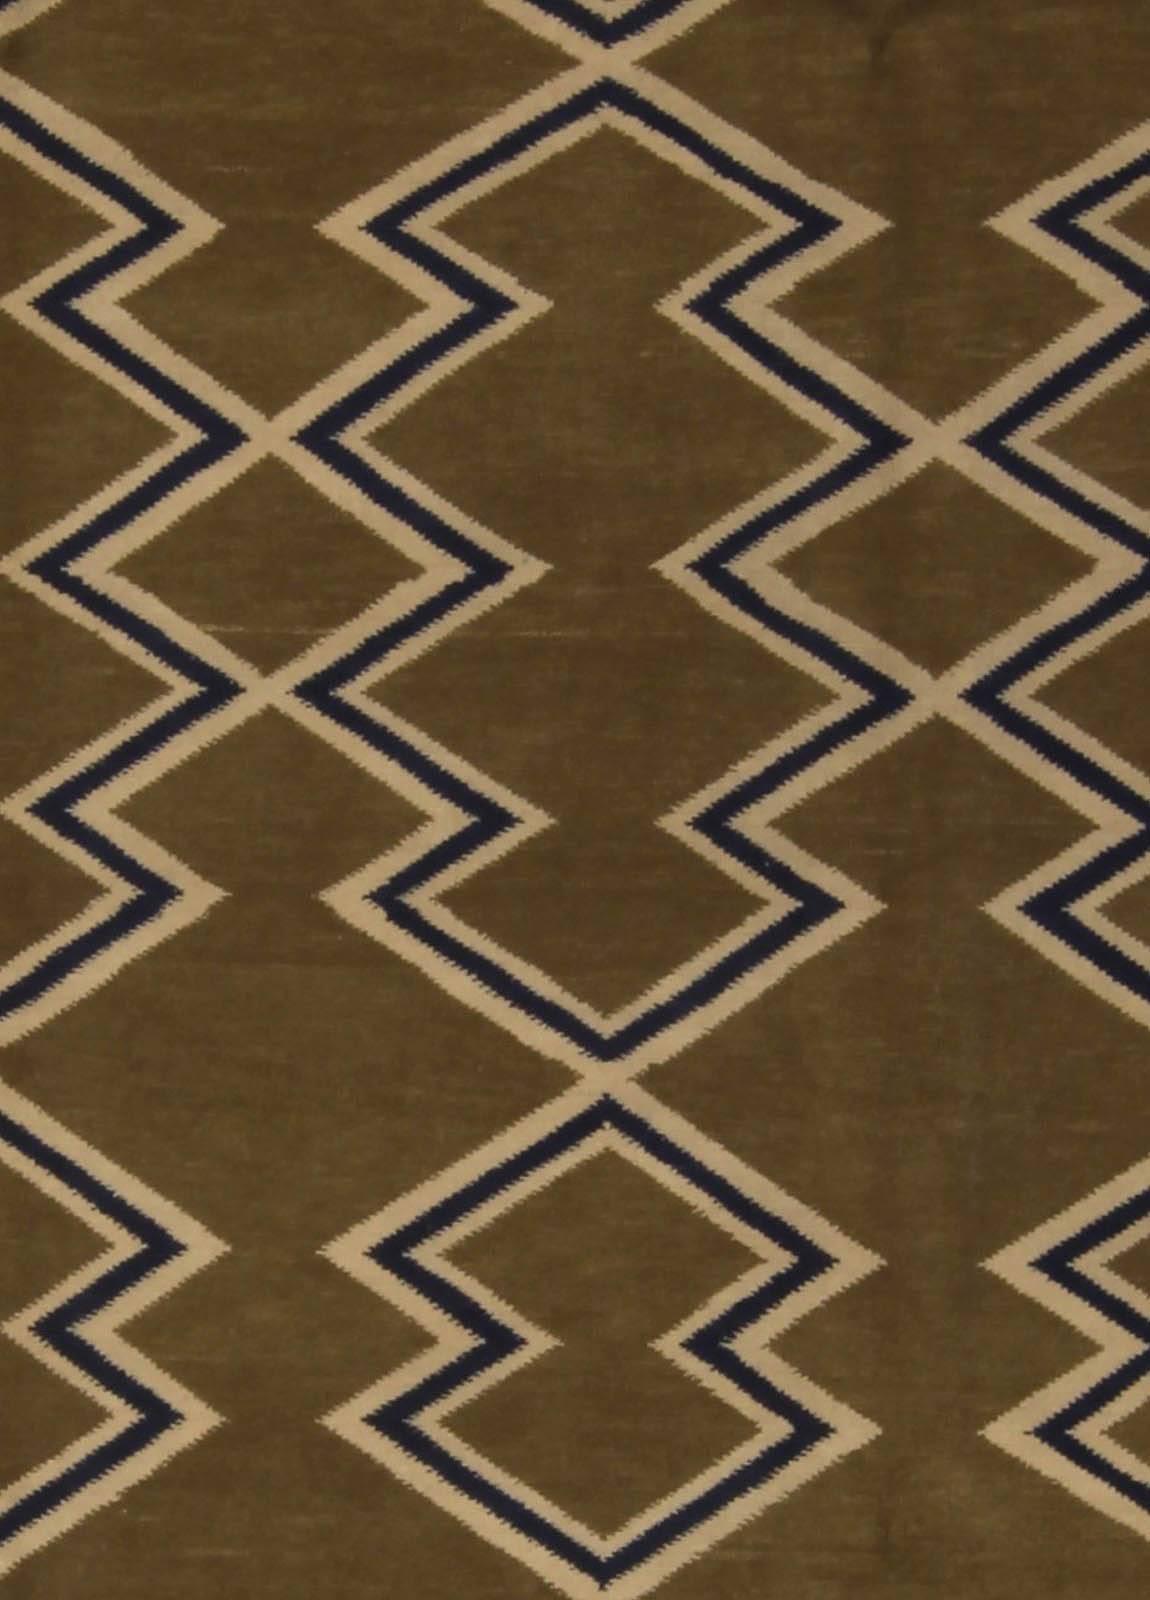 Moderner aztekischer Teppich mit geometrischem Design, handgefertigt von Doris Leslie Blau.
Größe: 9'0